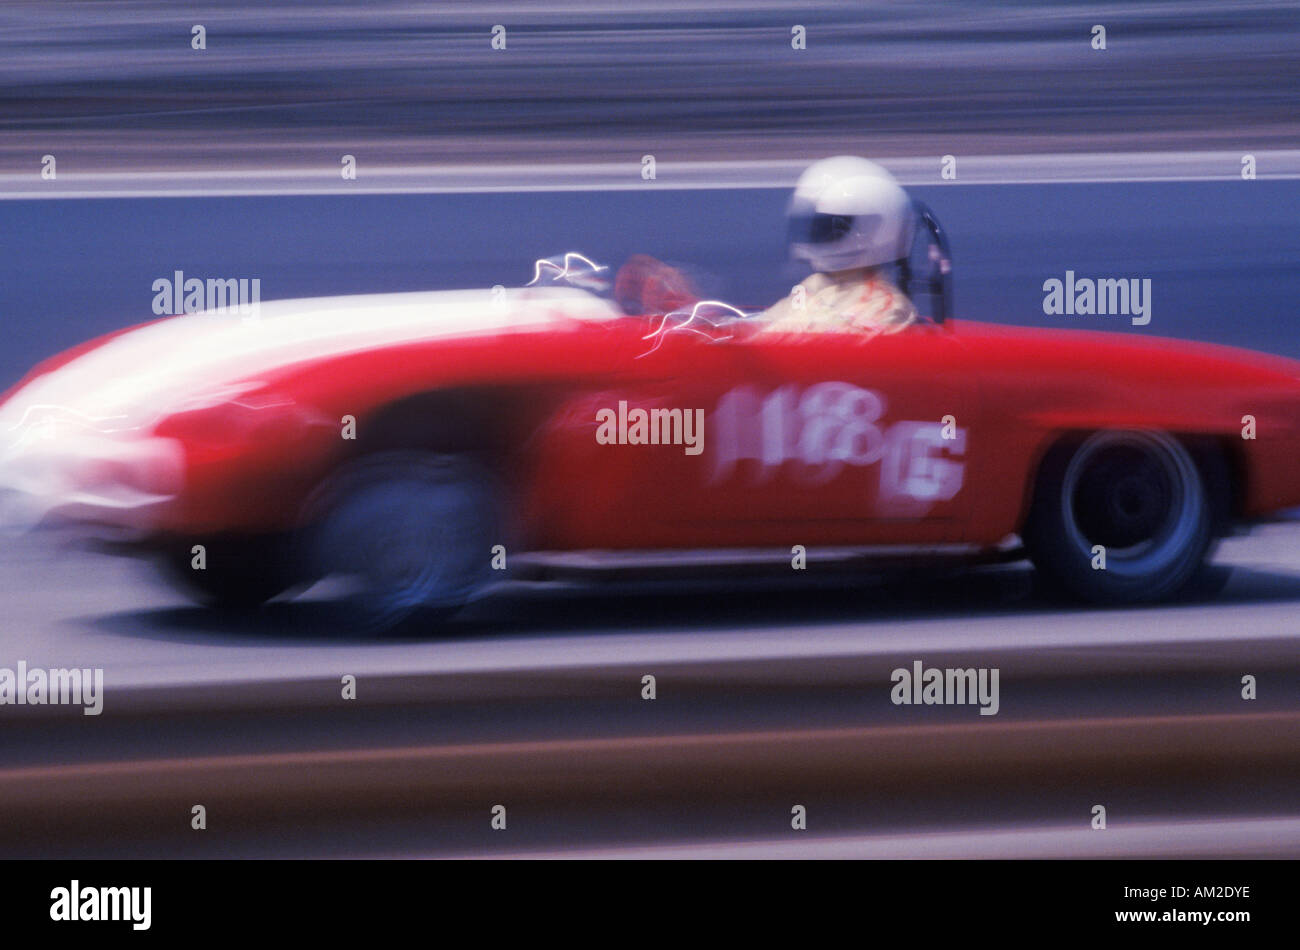 A red car and driver in the Laguna Seca Classic Car Race in Carmel California Stock Photo